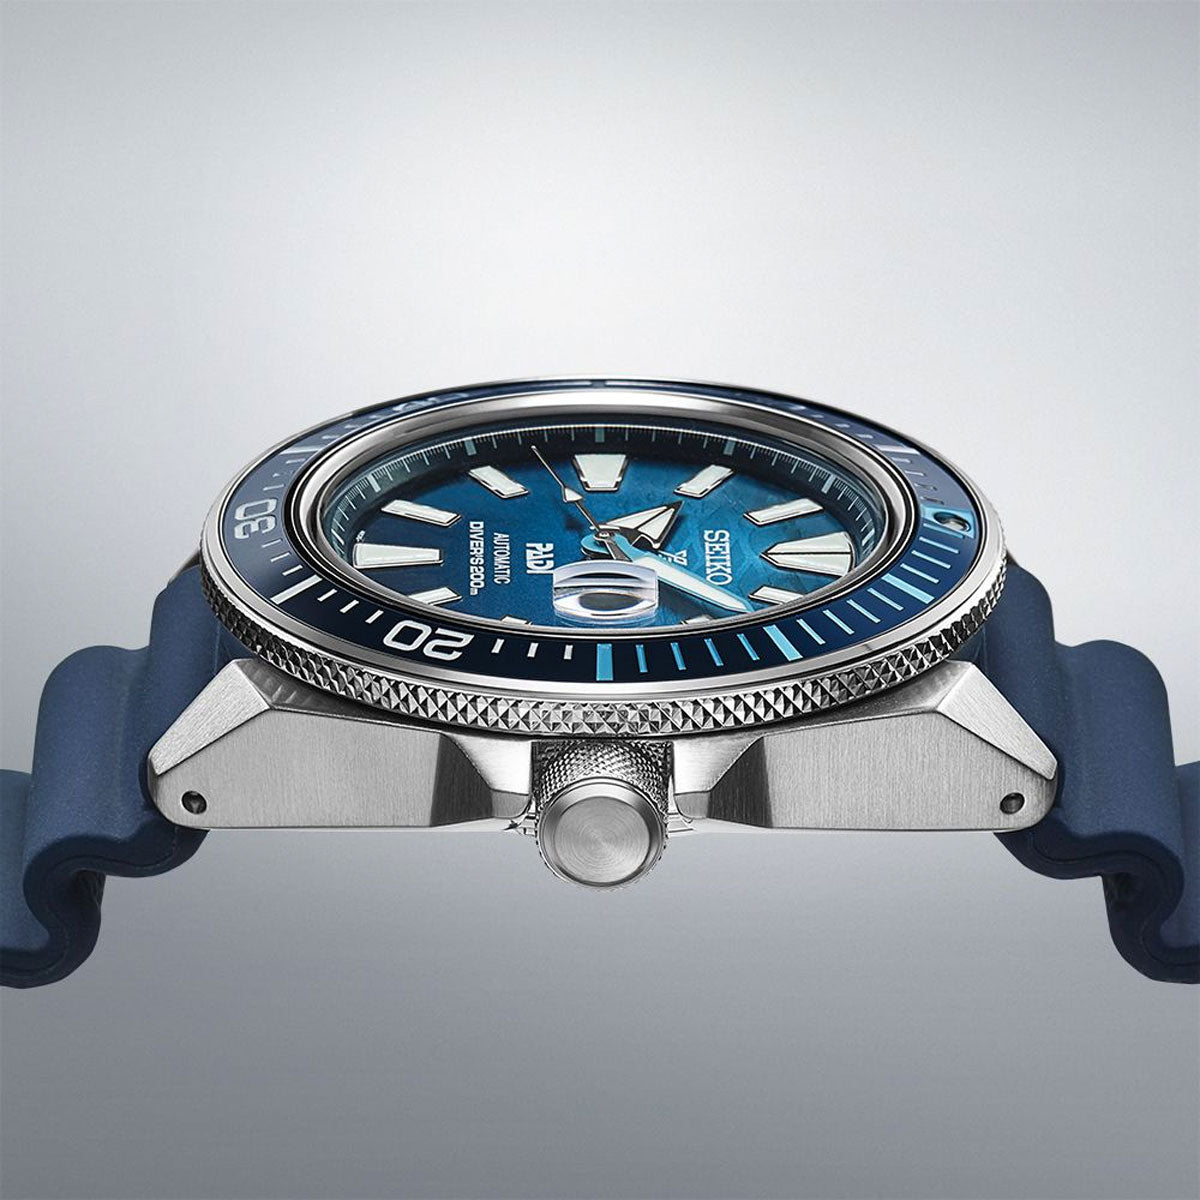 セイコー プロスペックス SEIKO PROSPEX ダイバースキューバ メカニカル 自動巻き PADIスペシャルモデル 腕時計 メンズ SBDY123